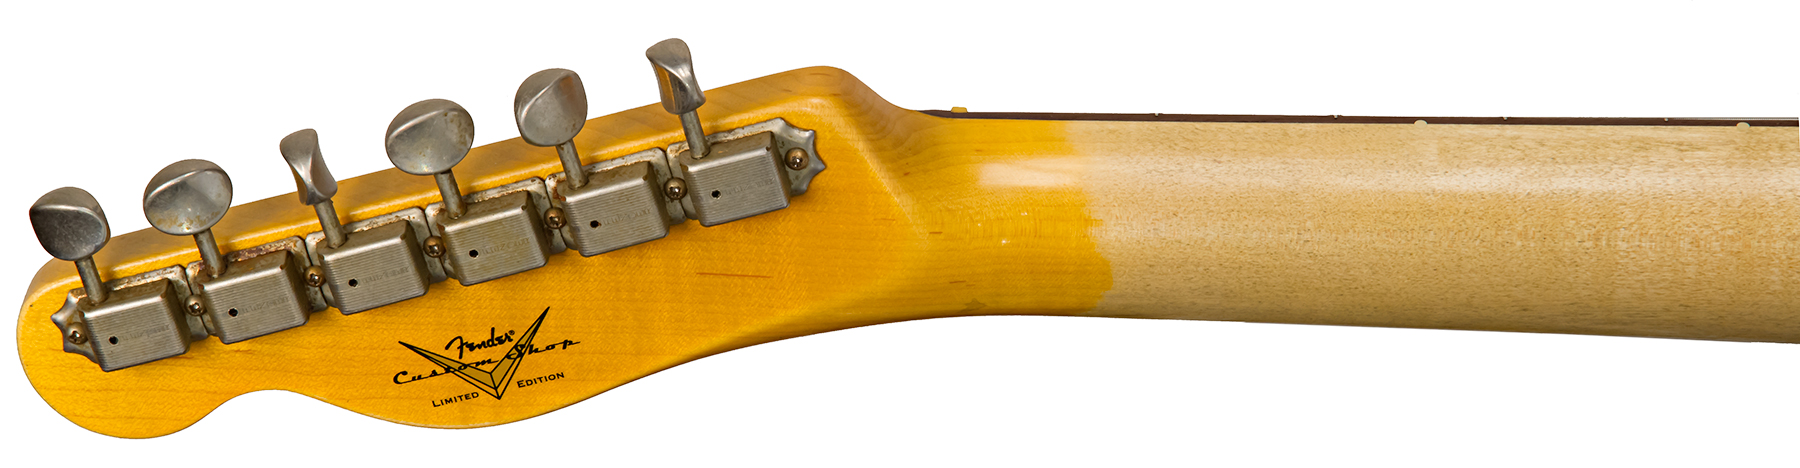 Fender Custom Shop Tele 1960 Rw #cz549121 - Journeyman Relic Purple Metallic - Guitare Électrique Forme Tel - Variation 5